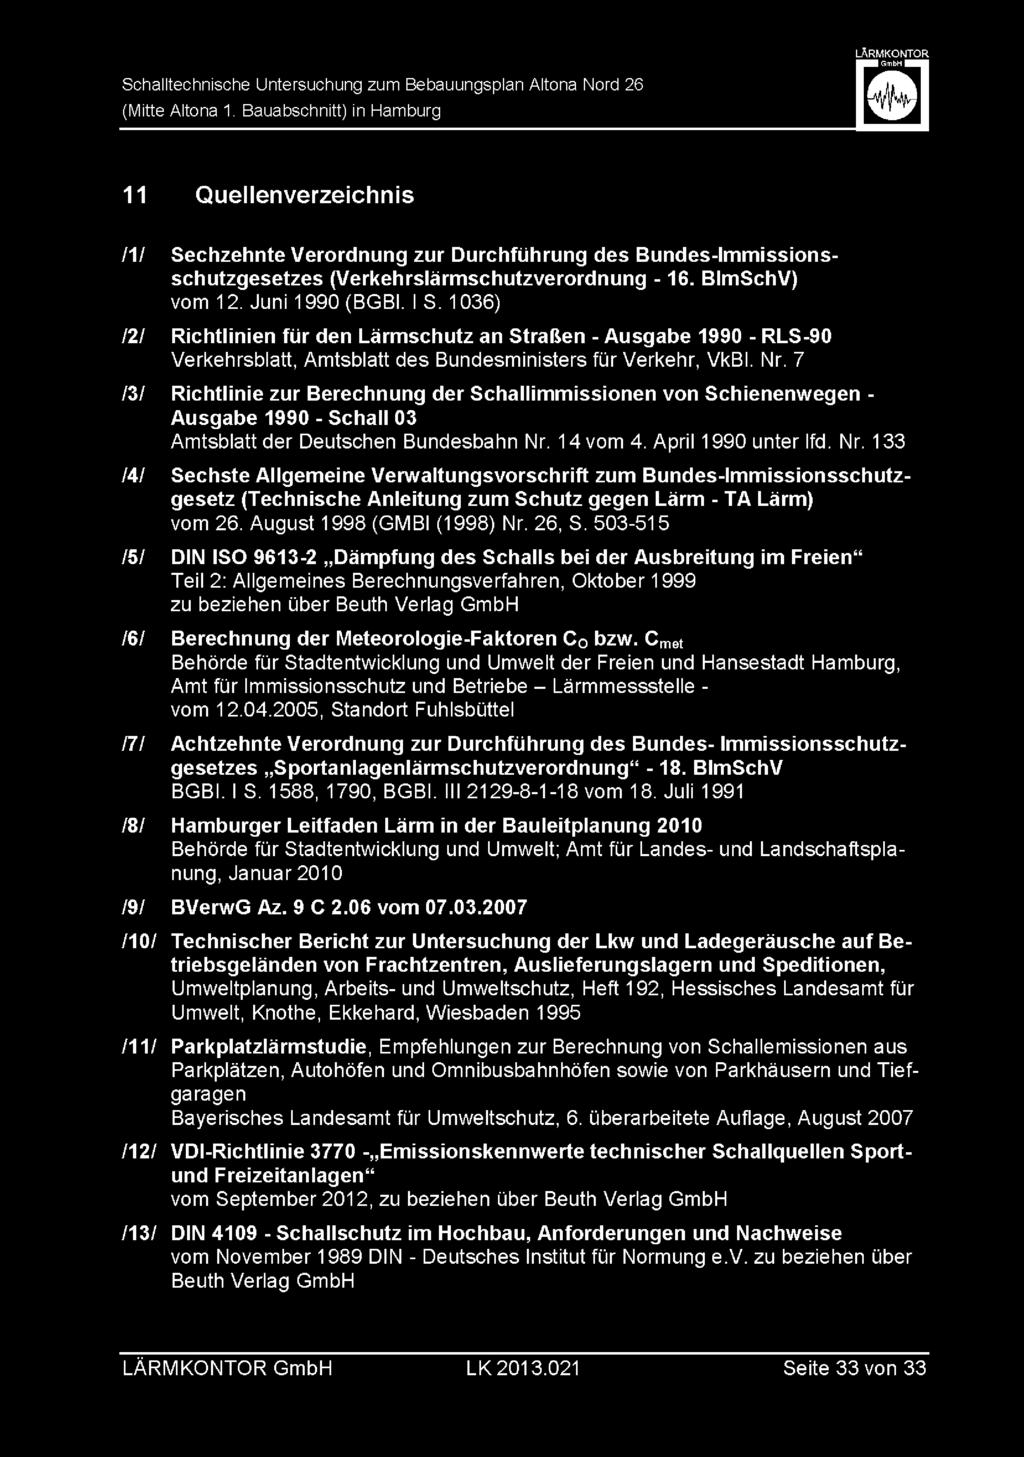 7 IZI Richtlinie zur Berechnung der Schallimmissionen von Schienenwegen - Ausgabe 1990 - Schall 03 Amtsblatt der Deutschen Bundesbahn Nr.